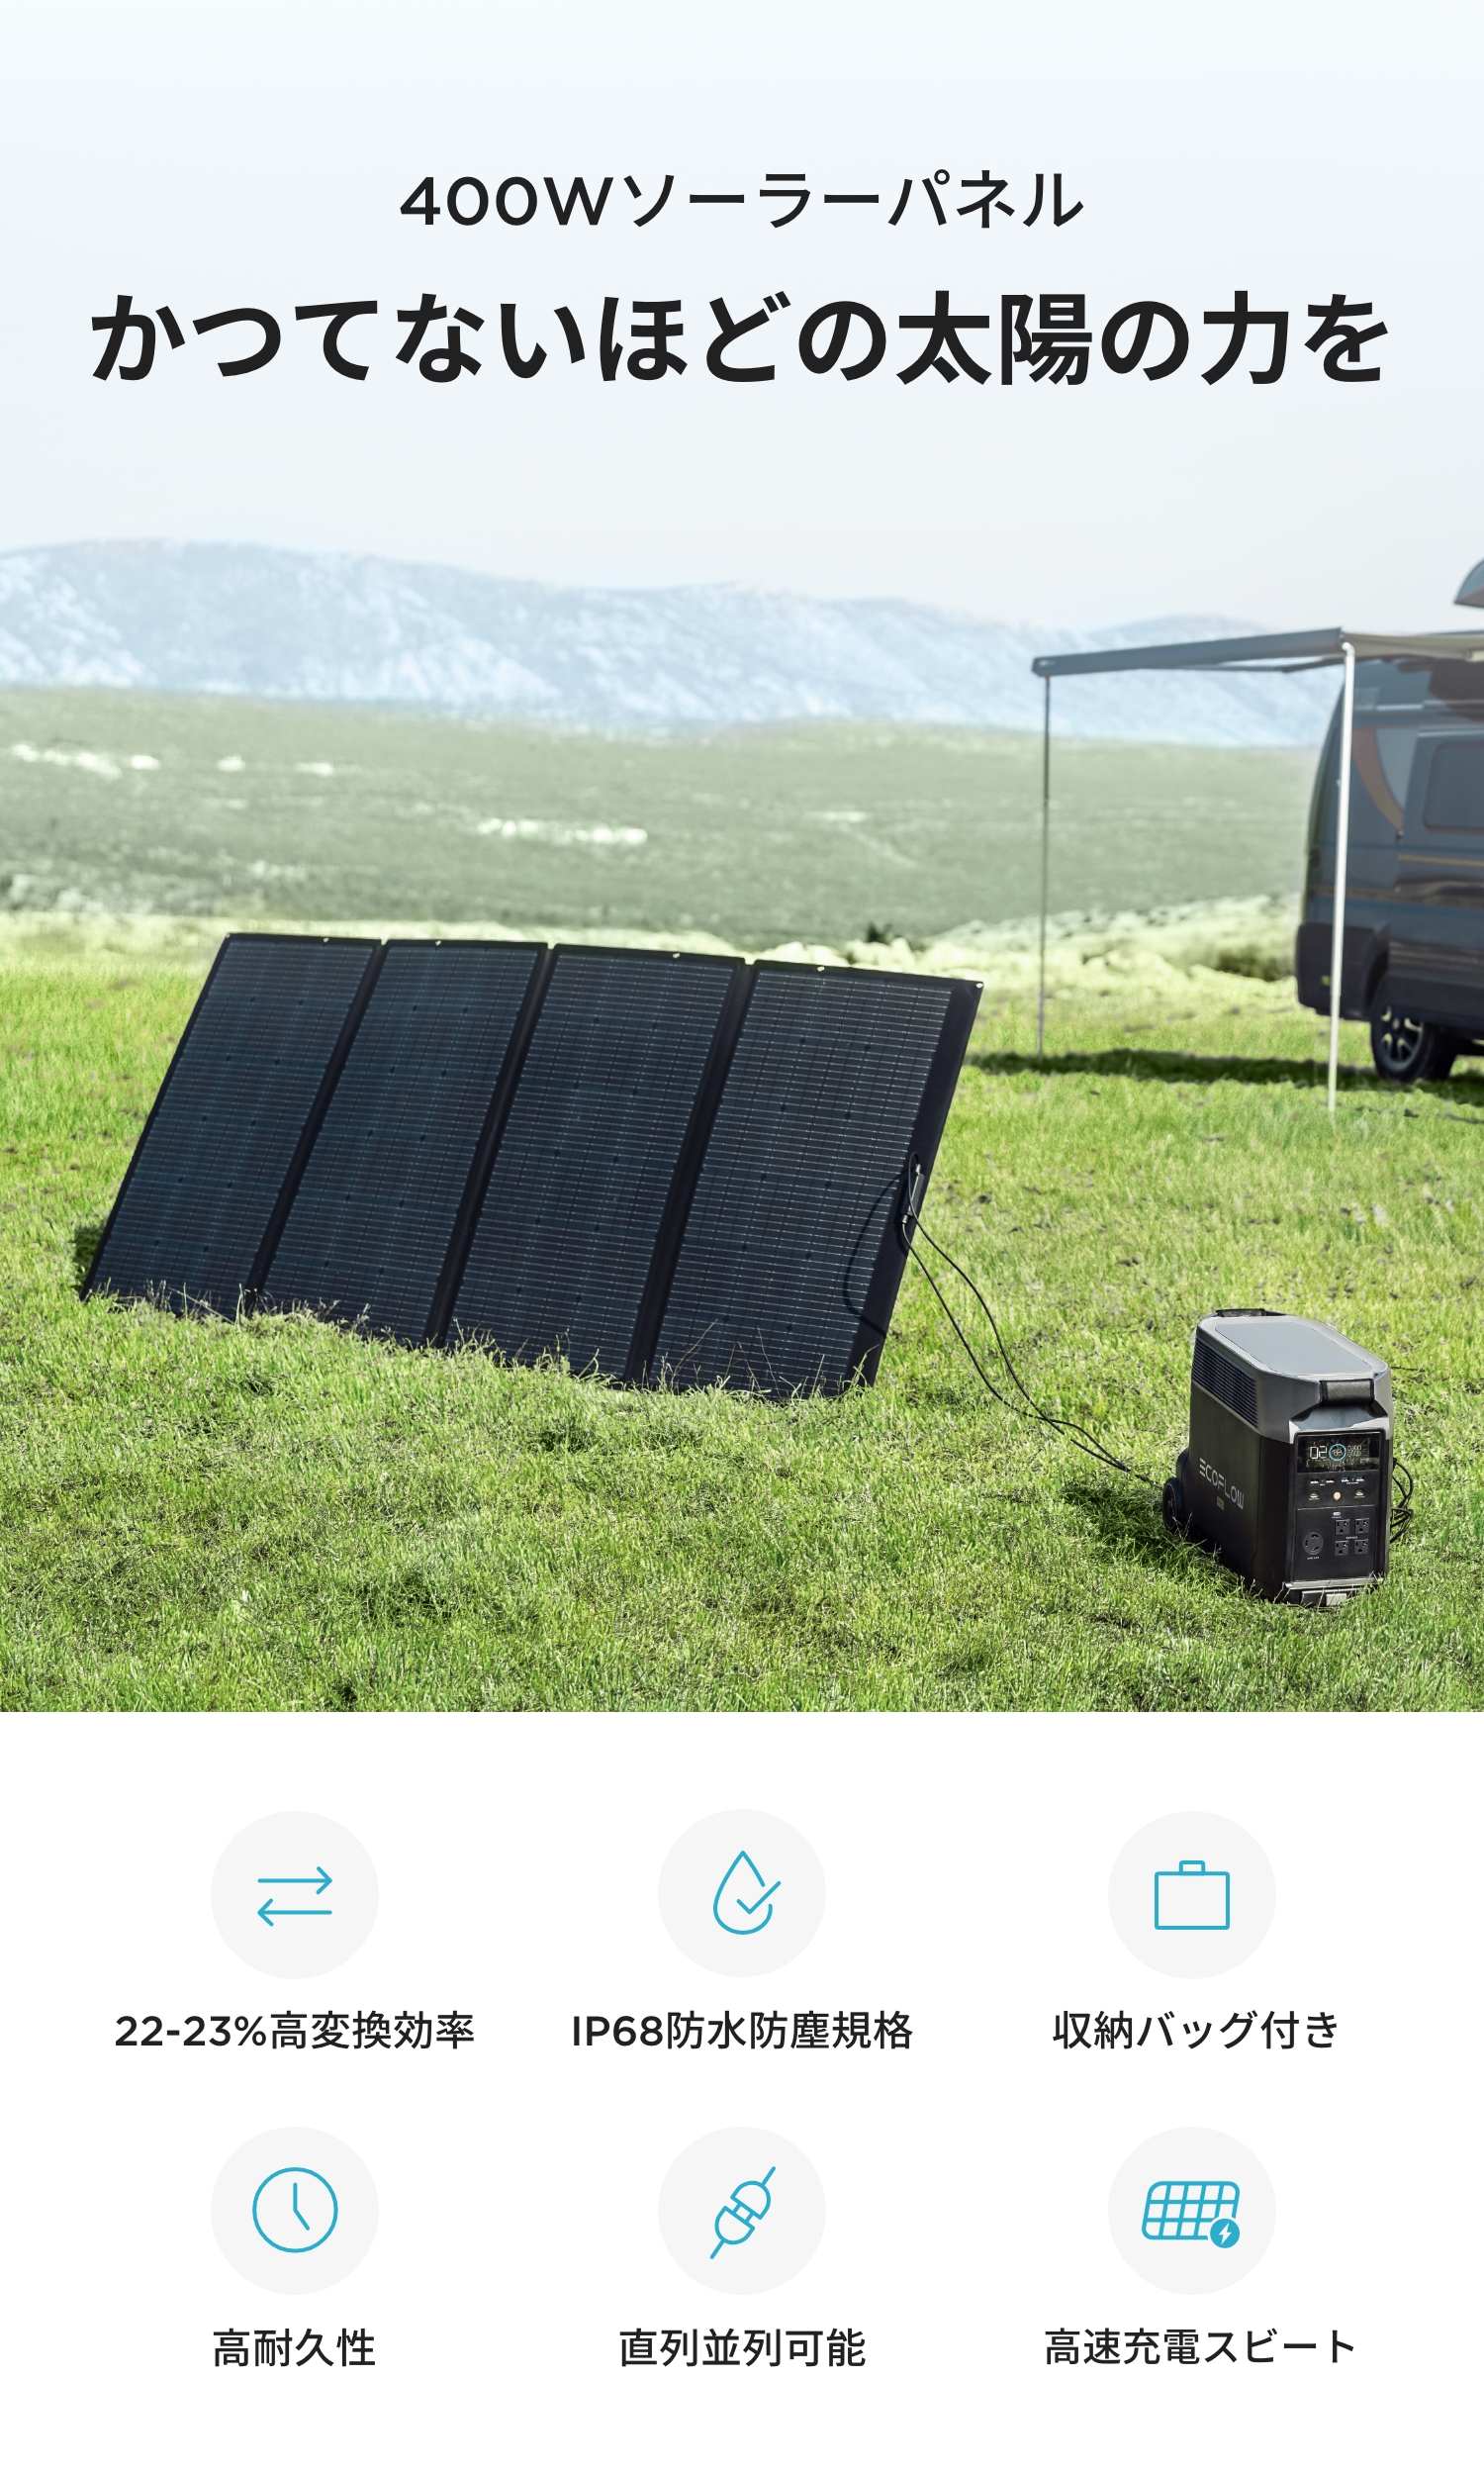 ソーラーパネル 400W 太陽光発電 太陽光パネル ソーラー充電器 ソーラーチャージャー ソーラー 車中泊 キャンプ 防災グッズ 停電 折り畳み  コンパクト EcoFlow : efsloar400w : EcoFlow公式 Yahoo!ショッピング店 - 通販 - Yahoo!ショッピング